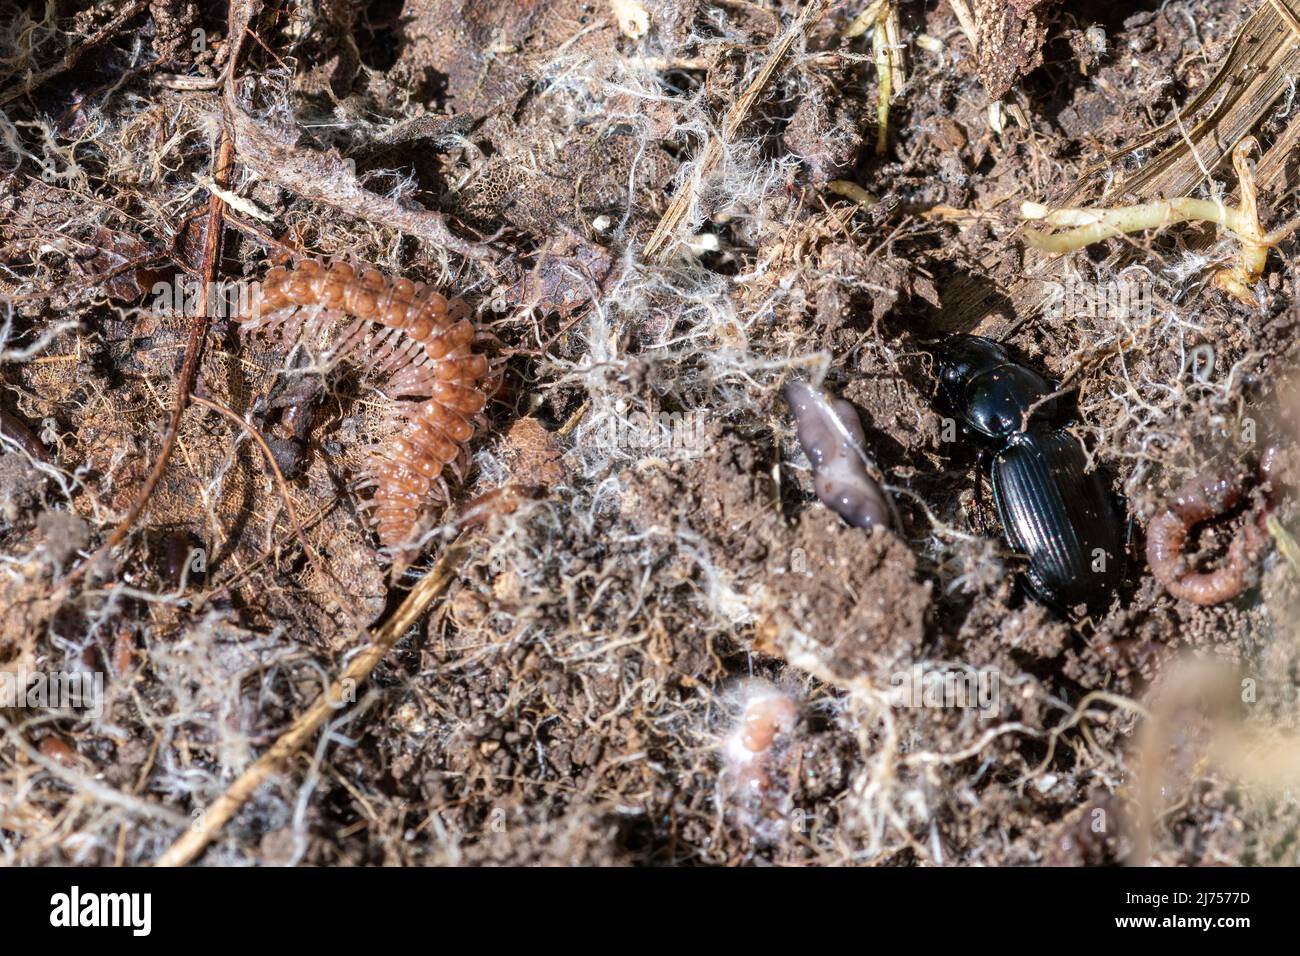 Flachrückiger Tausendfüßler (Polydesmus angustus) und ein Bodenkäfer, Kleintiertier-Wirbellose, gefunden unter einer Baumkäferjagd, England, Großbritannien Stockfoto